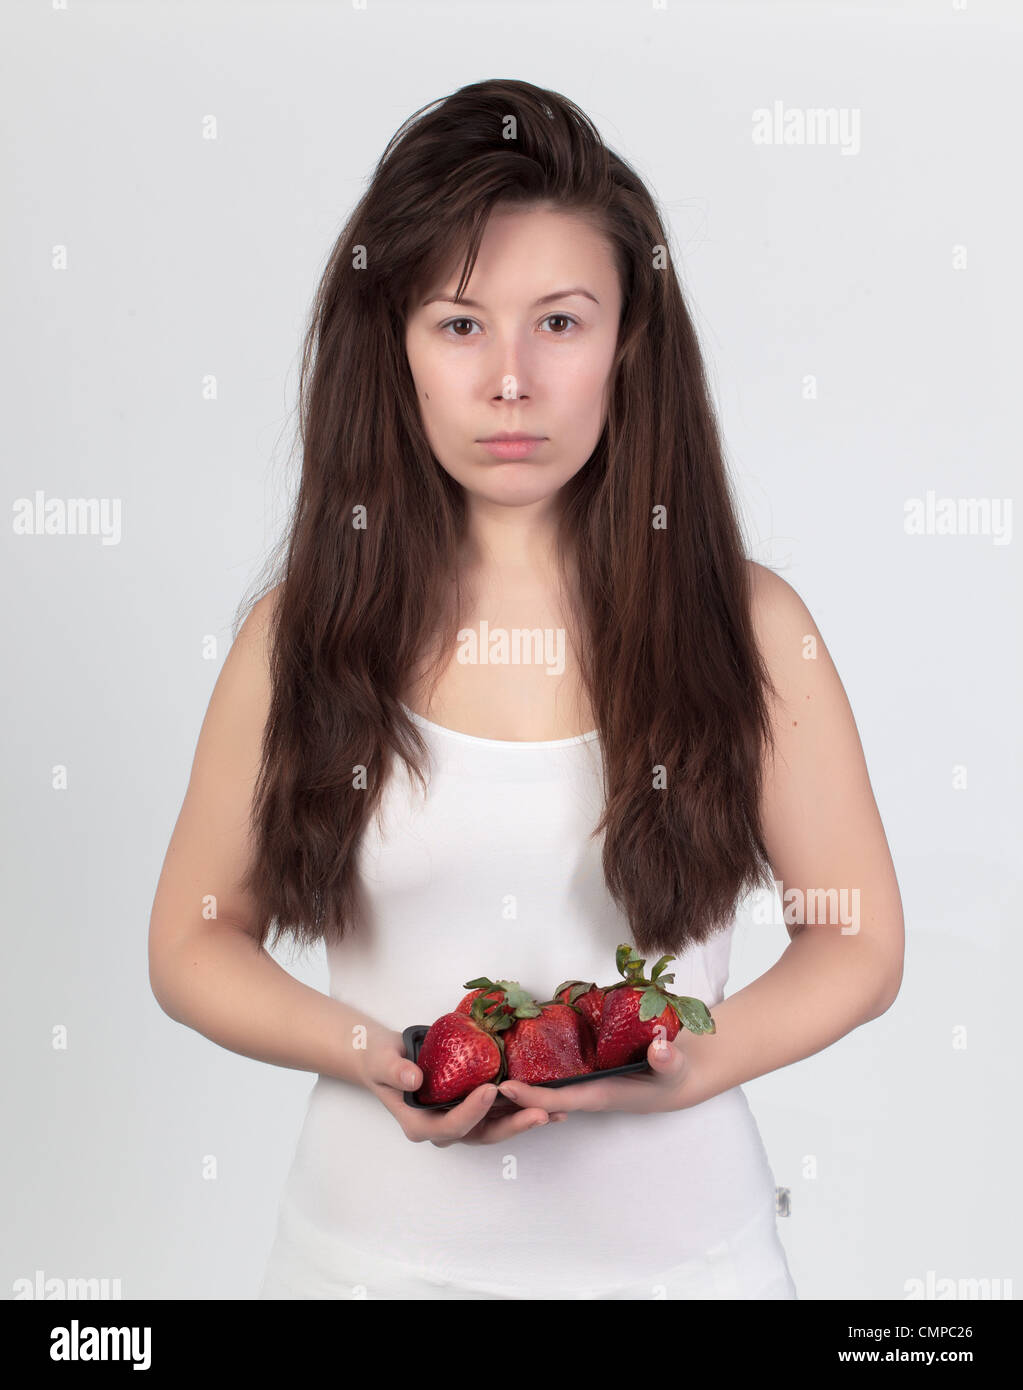 Die junge schöne Frau mit frischen Erdbeeren, das Konzept von gesunden Lebensmitteln Stockfoto